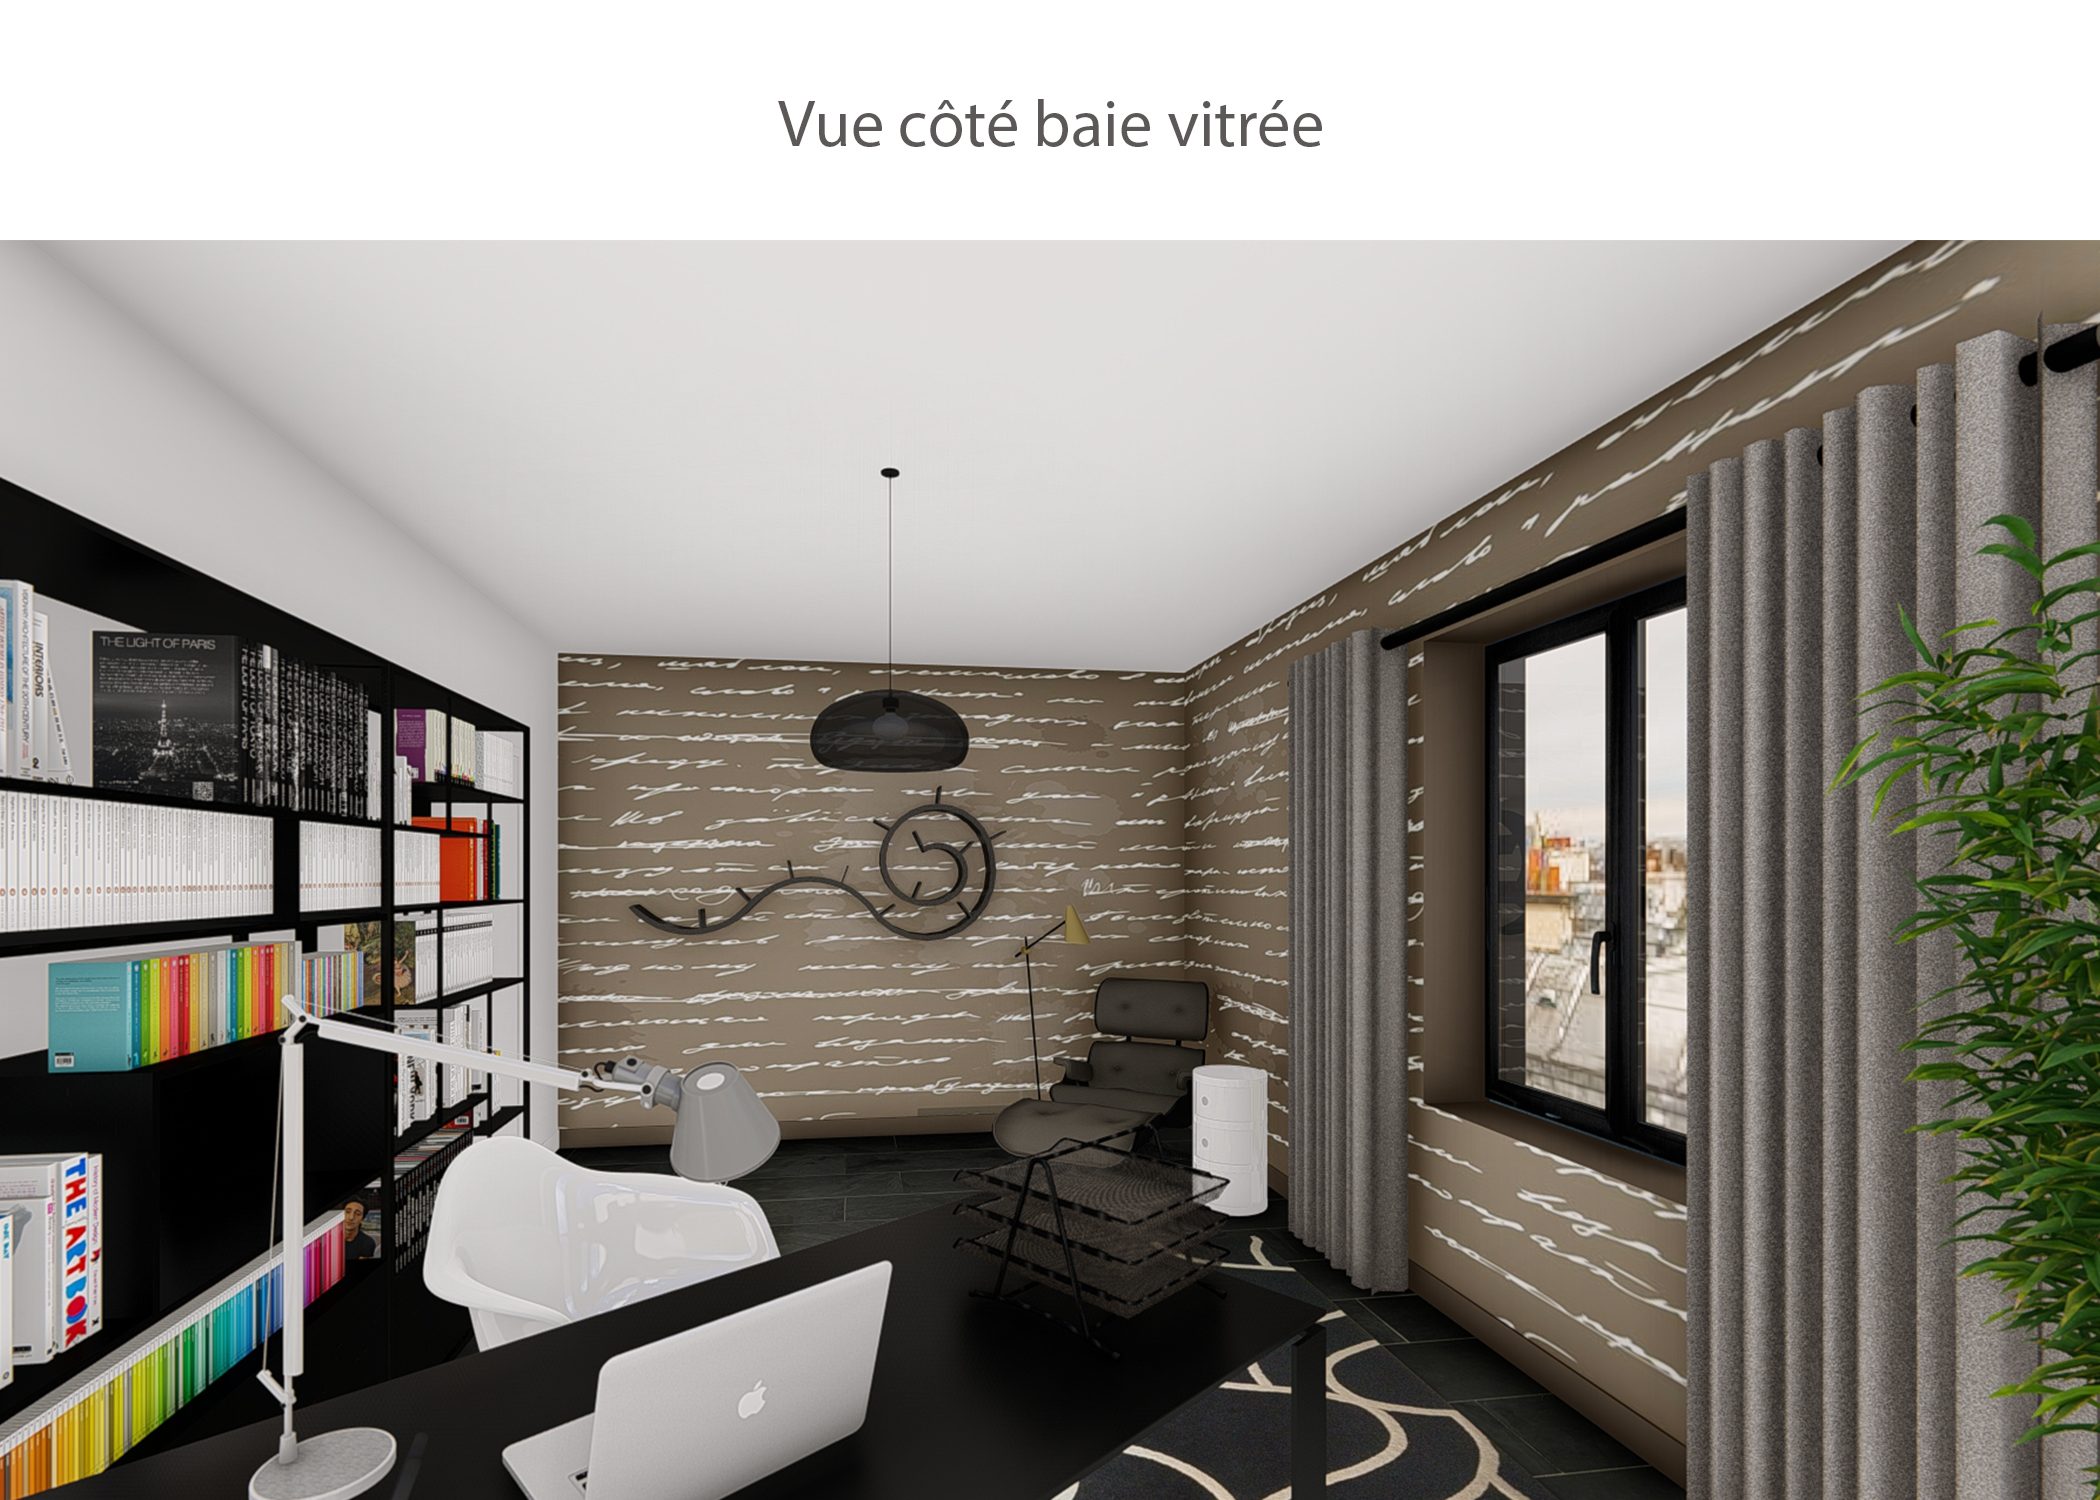 decoration-espace bureau-vue cote baie vitree-paris-dekho design